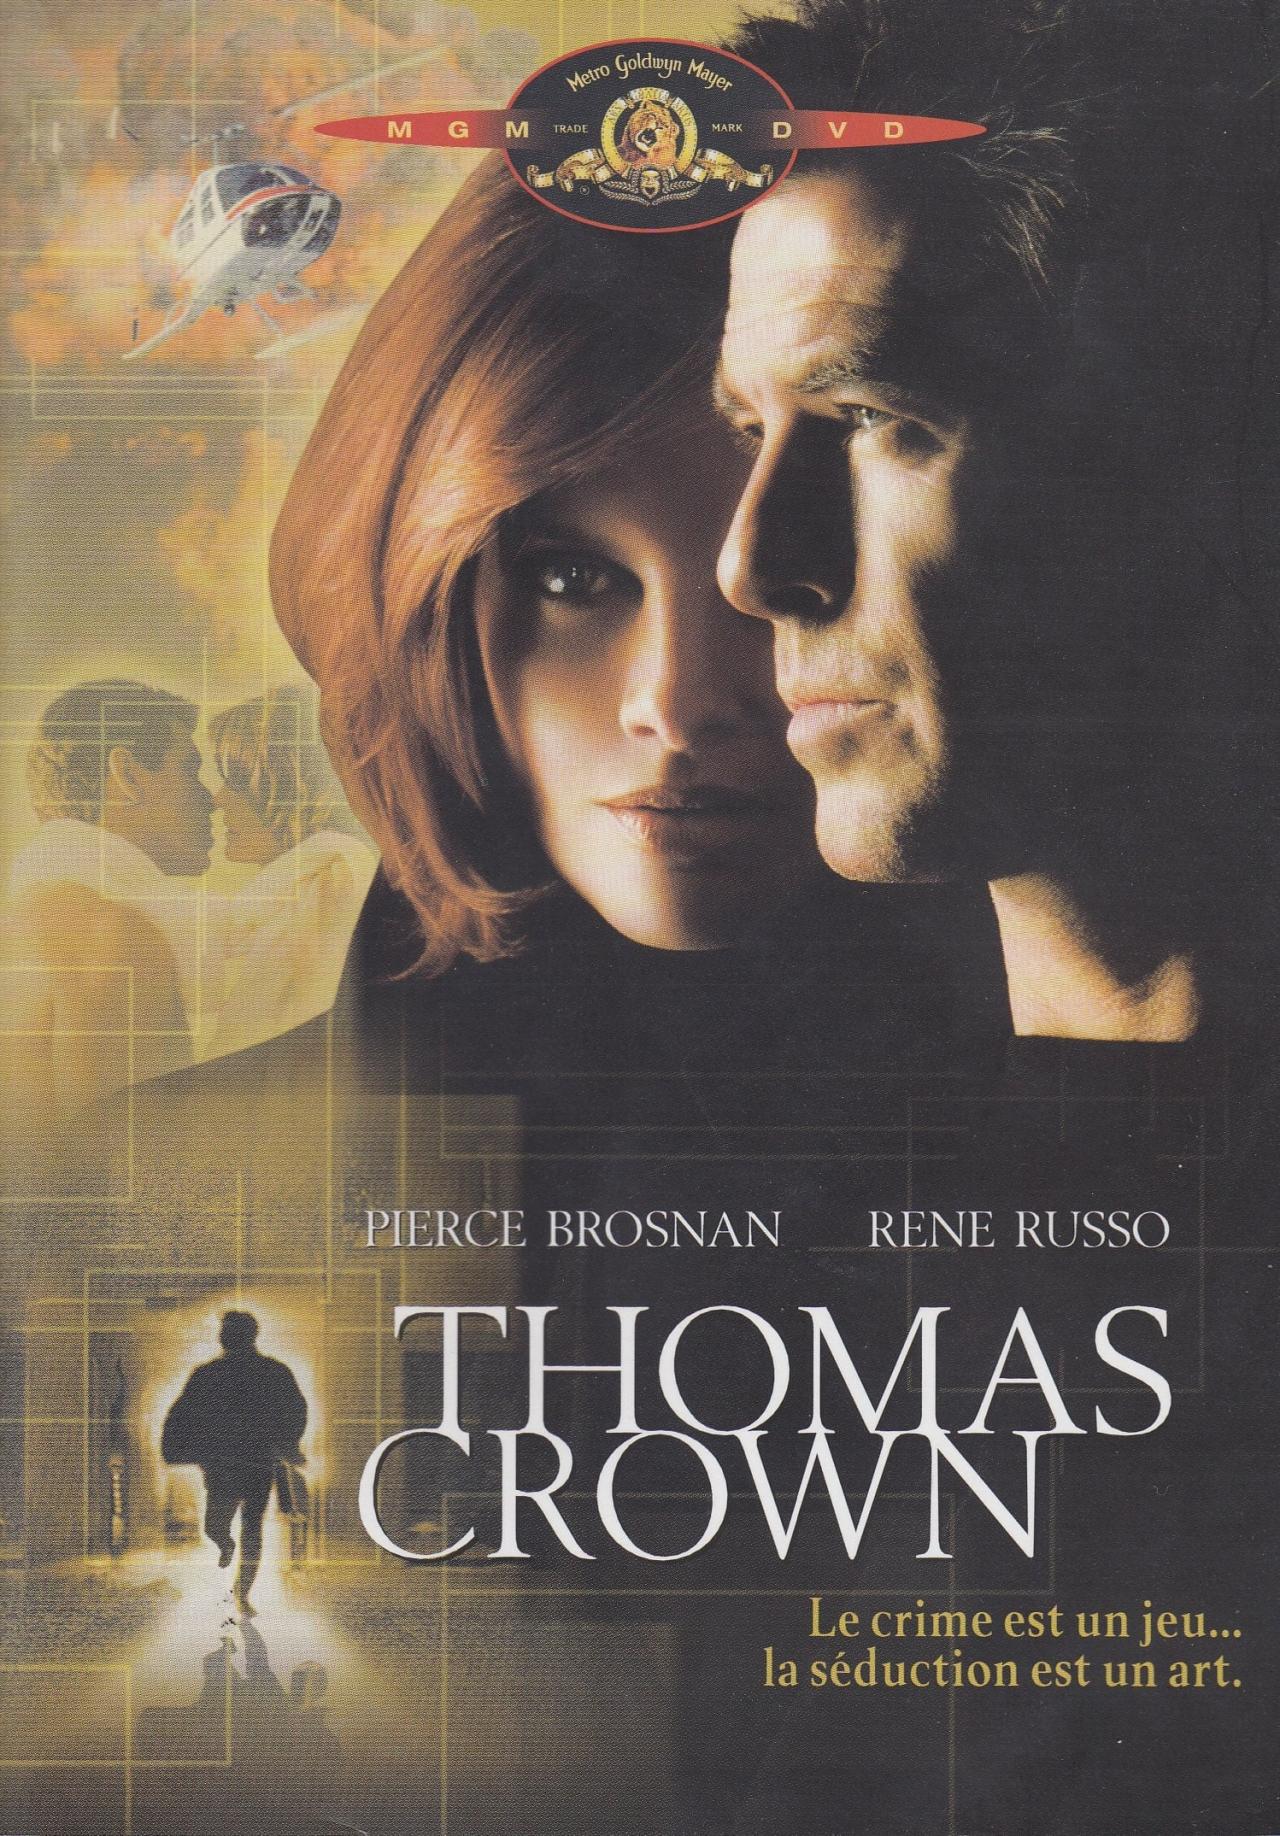 Thomas Crown est-il disponible sur Netflix ou autre ?